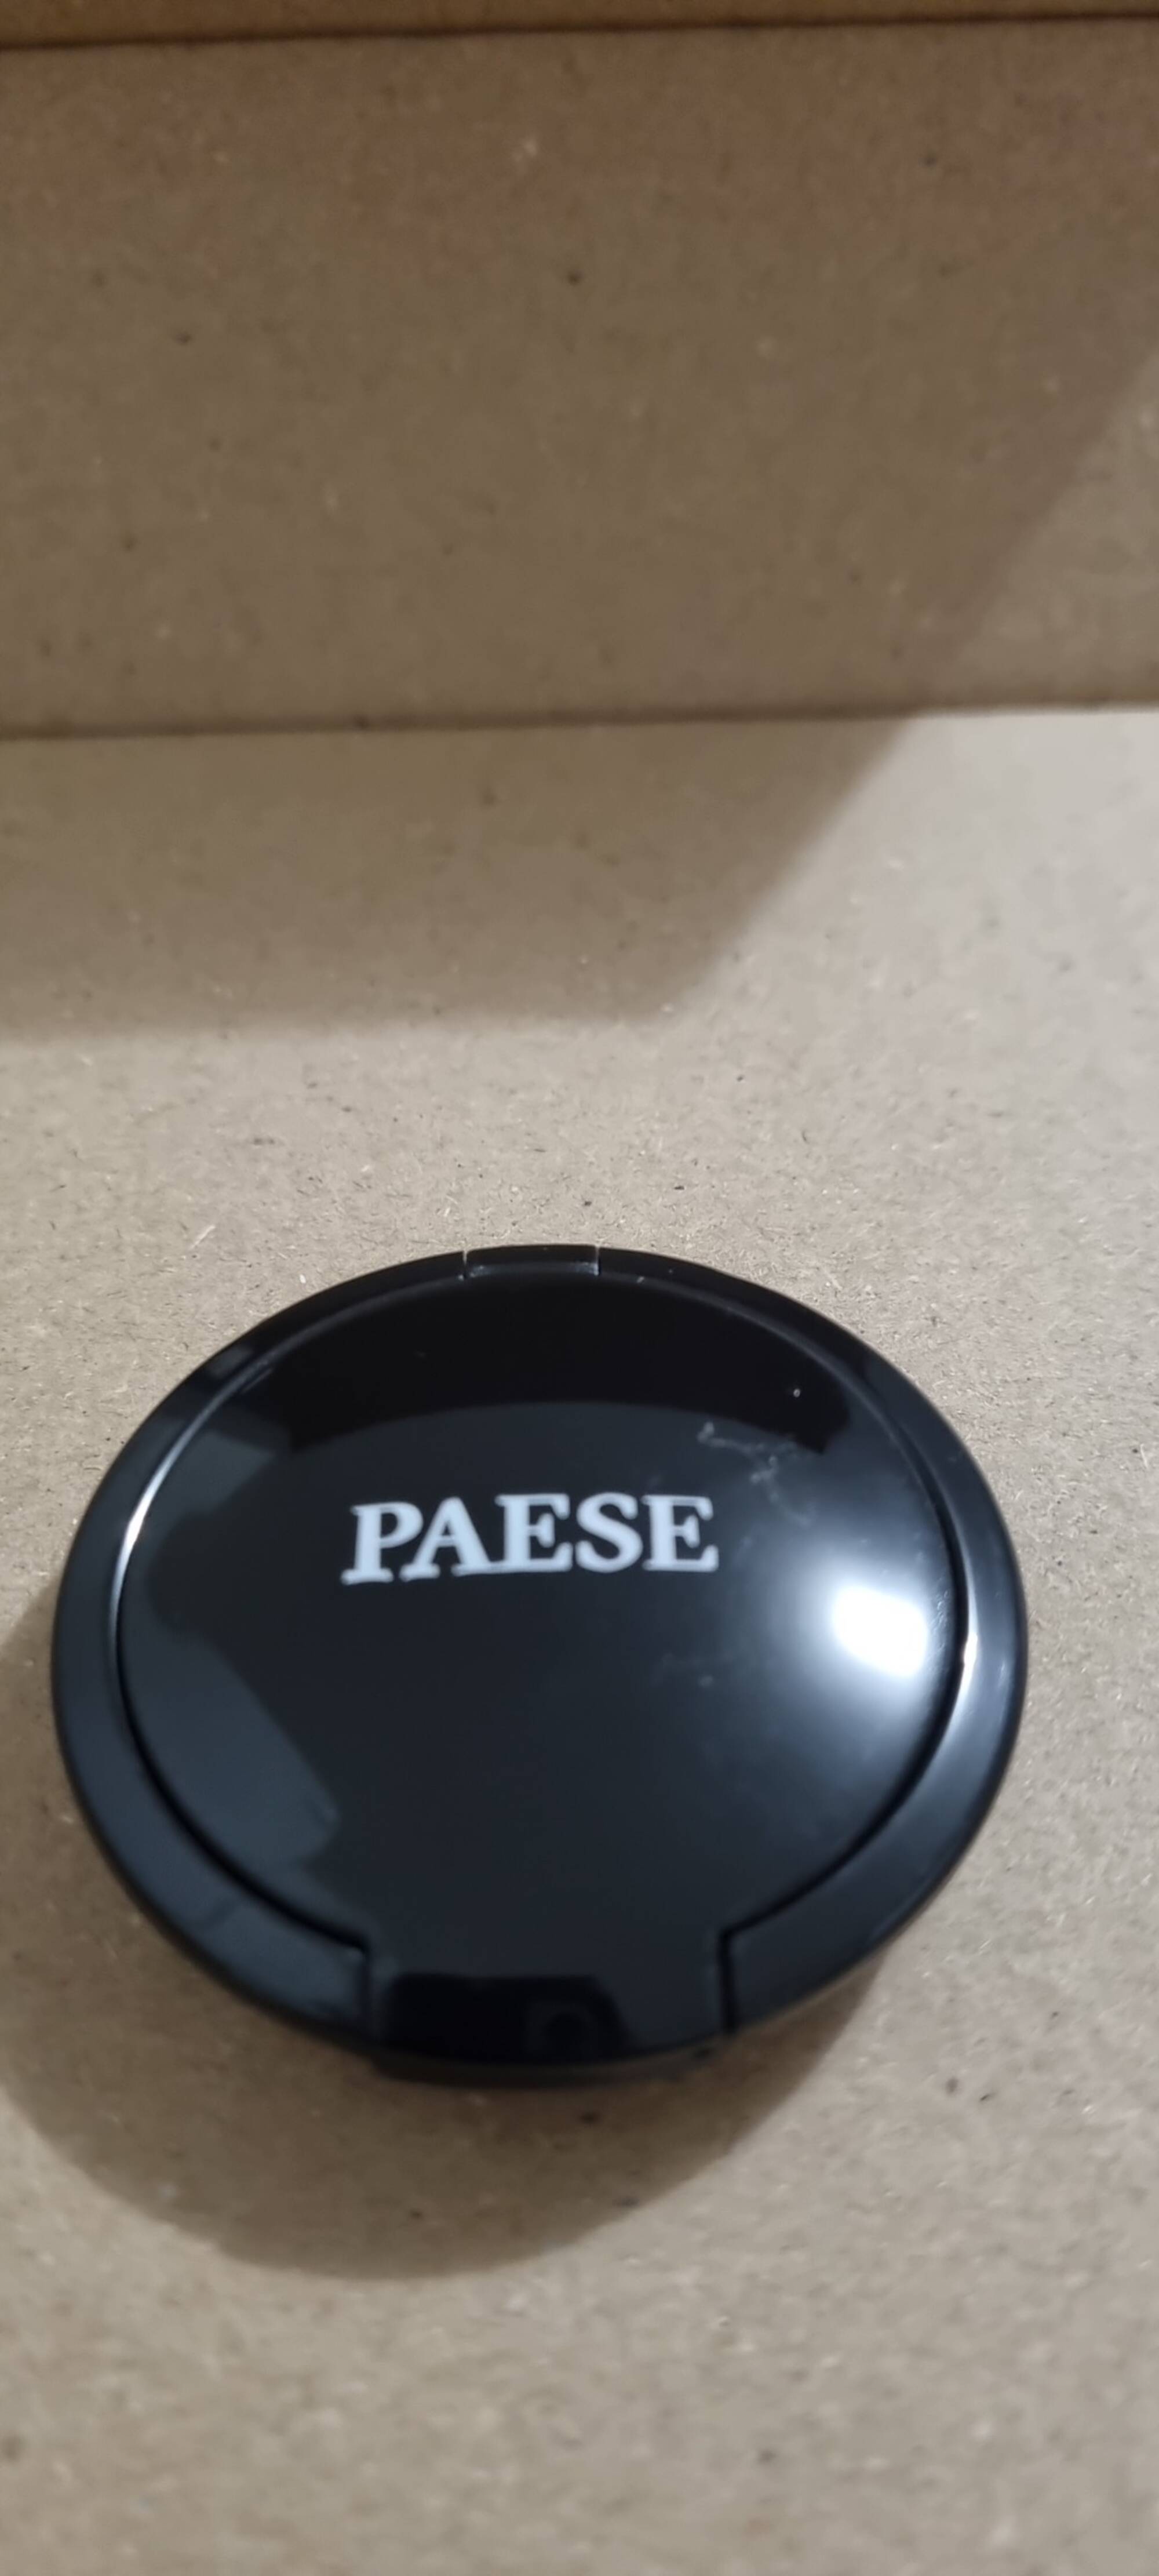 PAESE - Blush